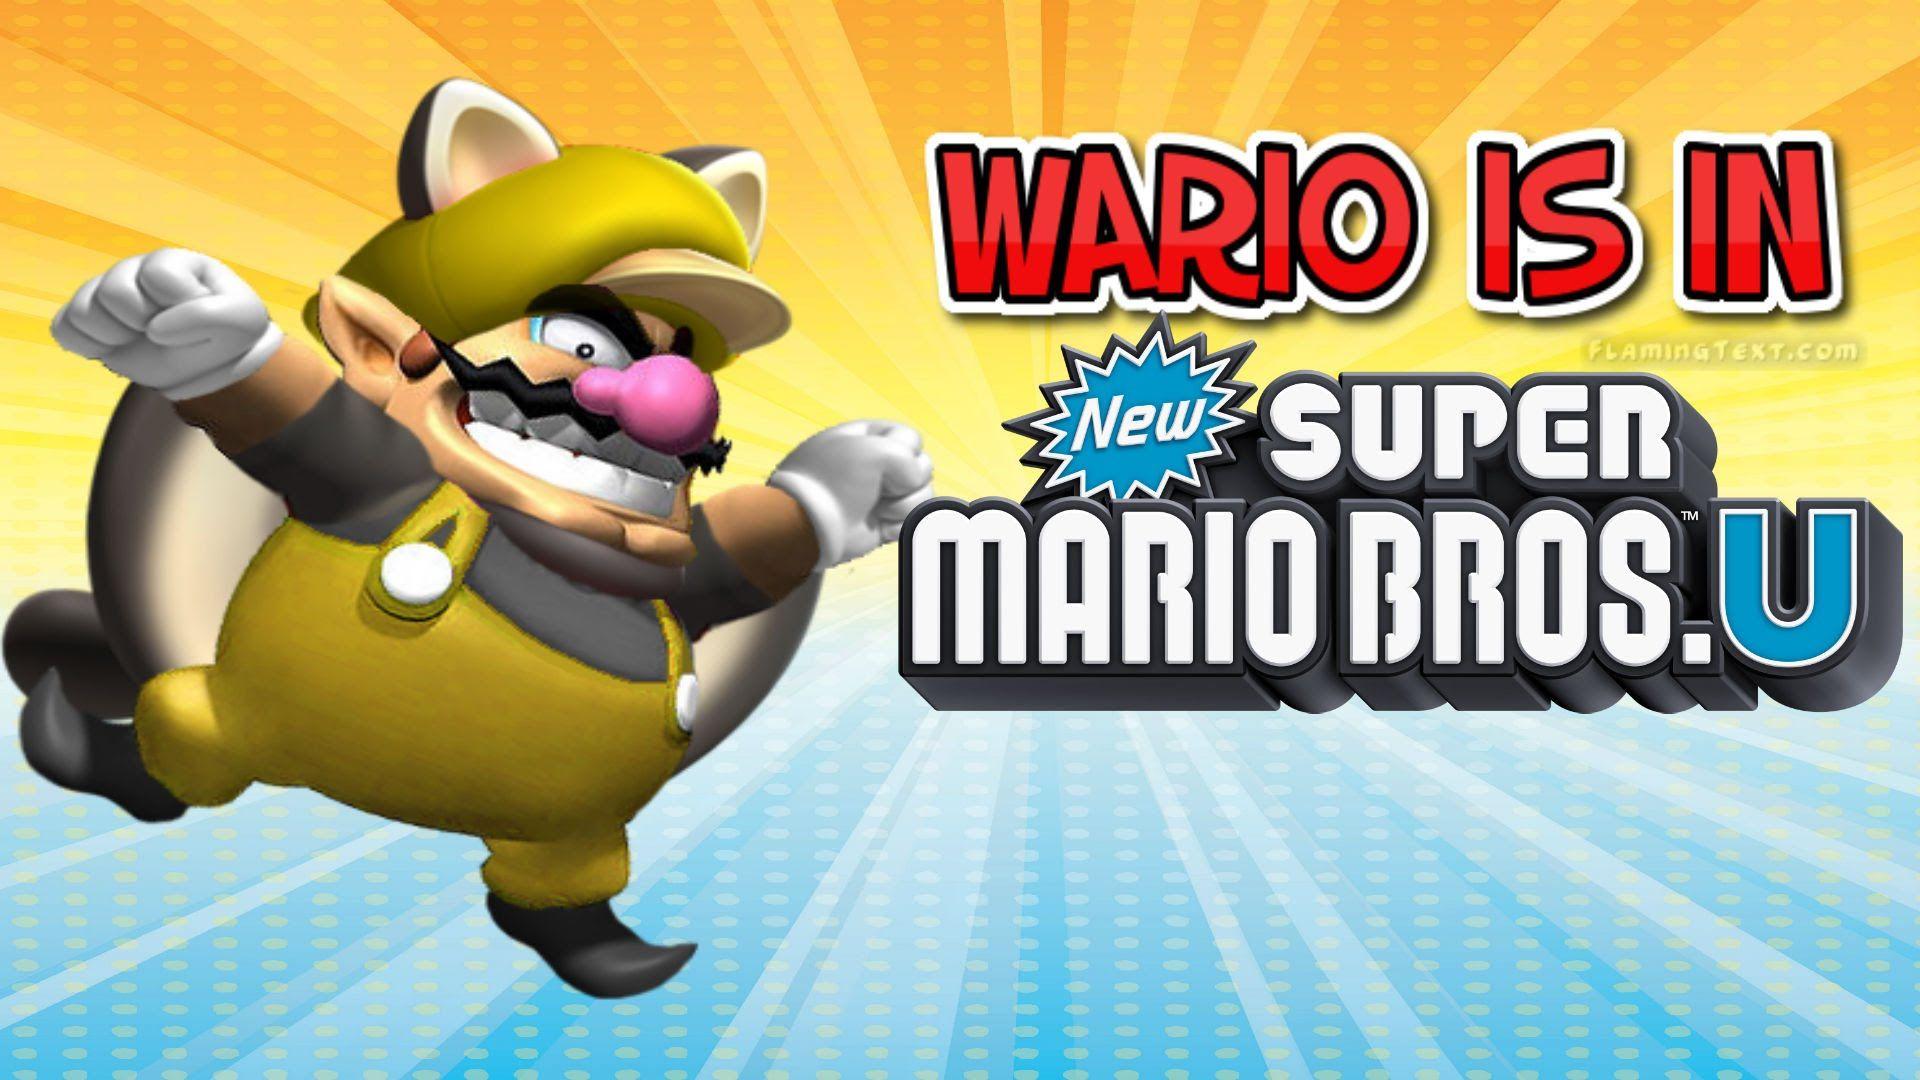 Wario's in New Super Mario Bros. U?!?!?!